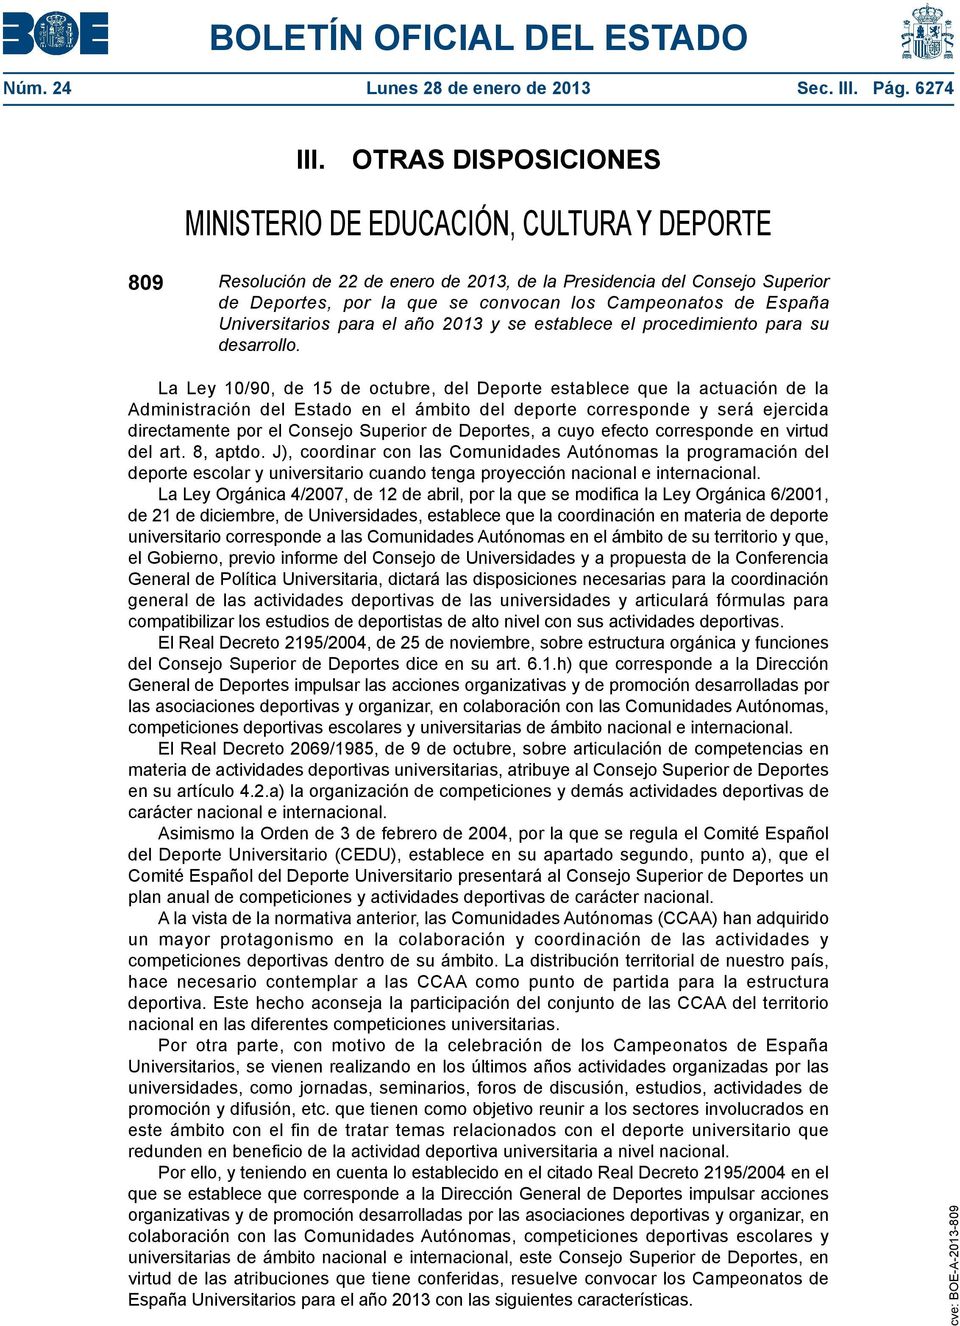 España Universitarios para el año 2013 y se establece el procedimiento para su desarrollo.